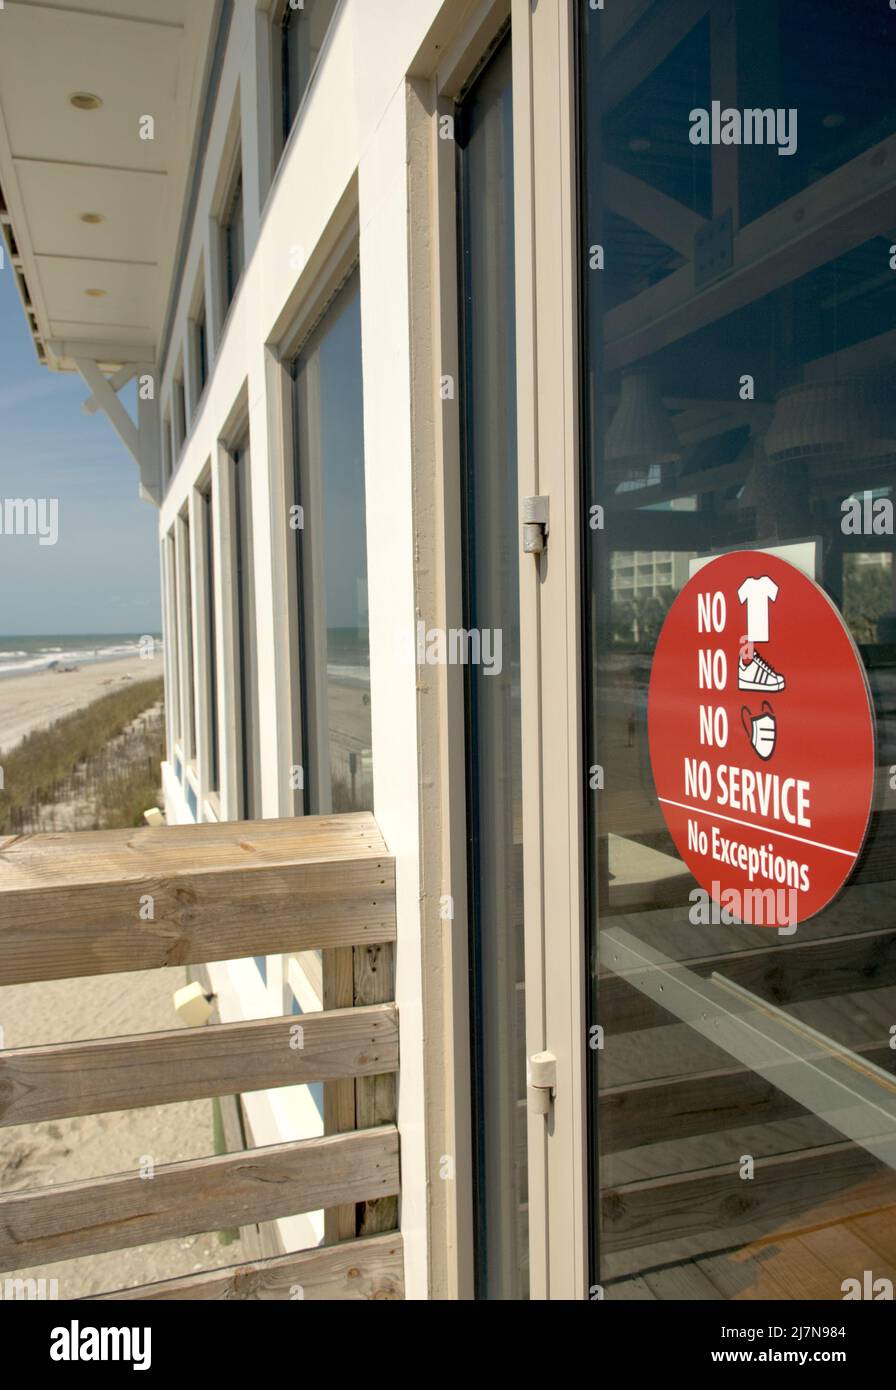 Das 2. Avenue Pier Restaurant in Myrtle Beach, South Carolina, USA veranschaulicht die Regeln nach den Covid-19-Regeln. Stockfoto